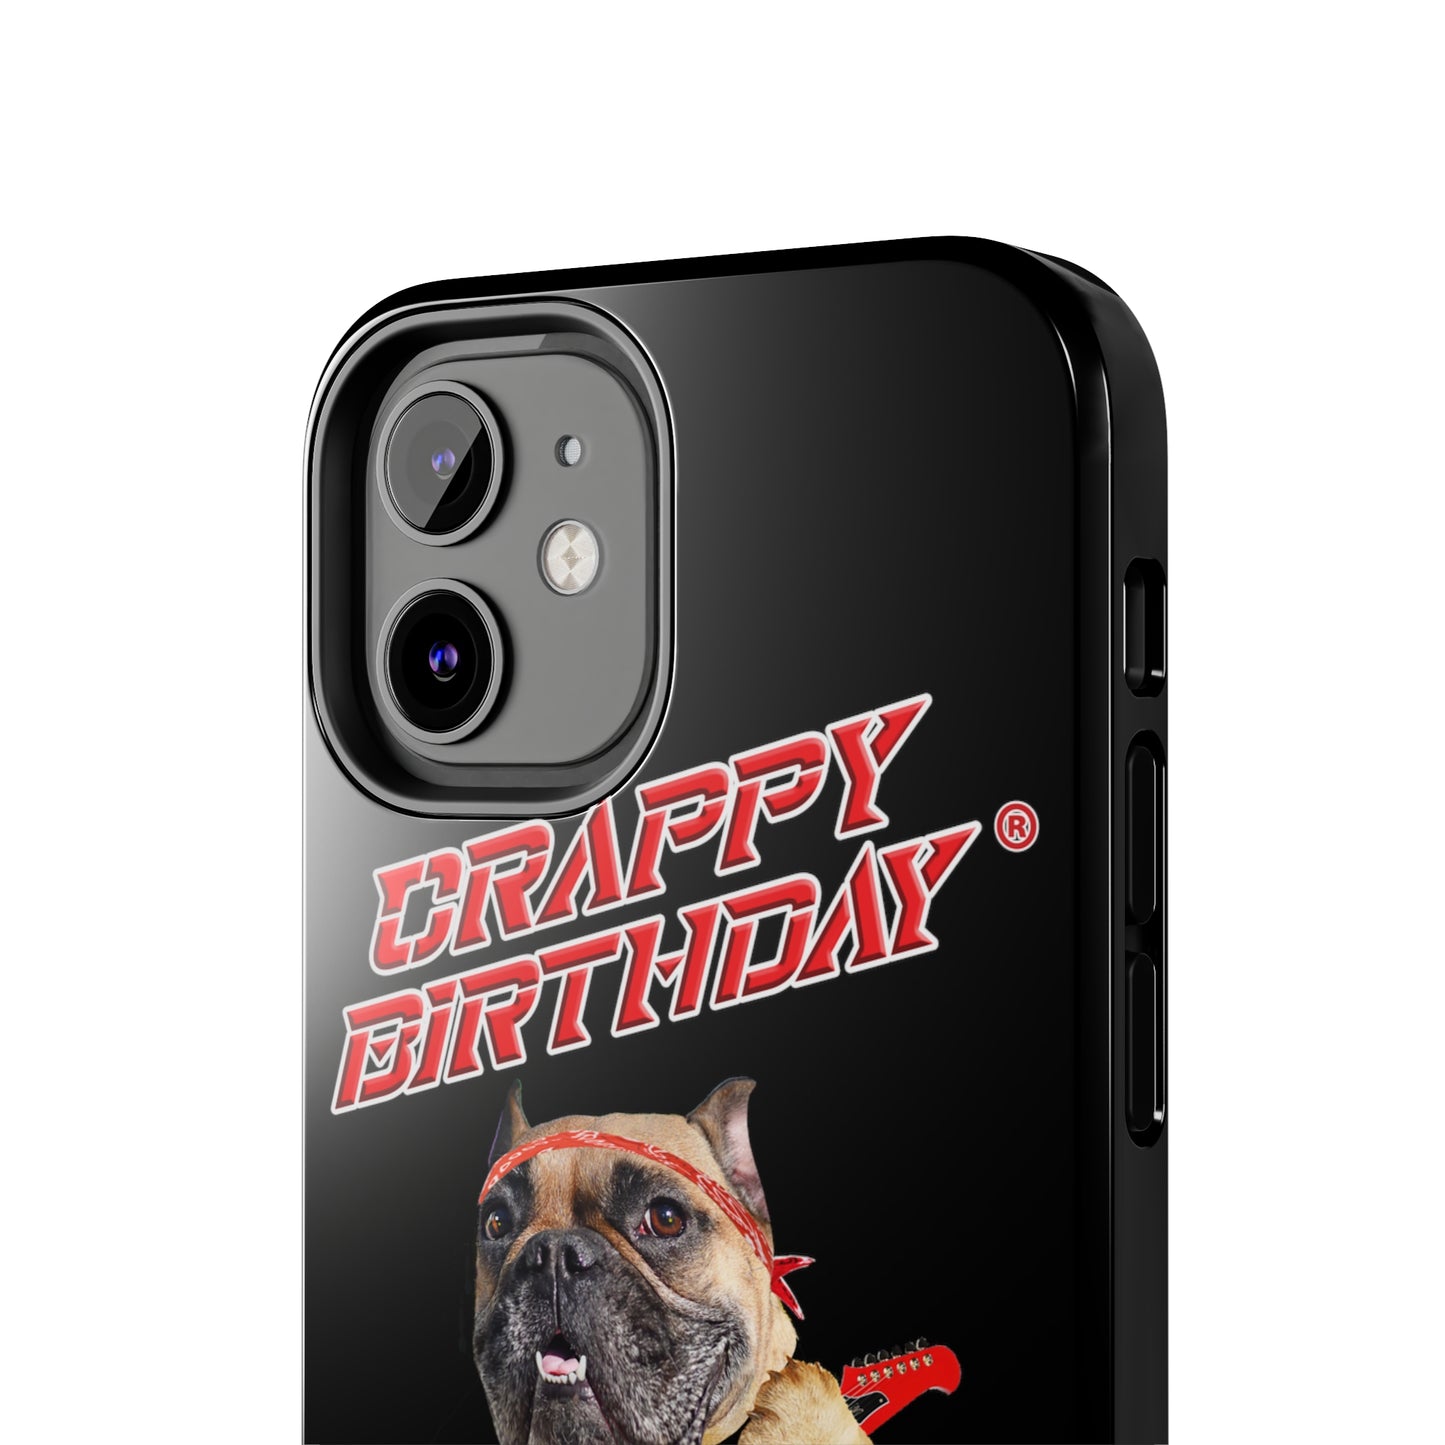 Crappy Birthday II Tough Phone Cases